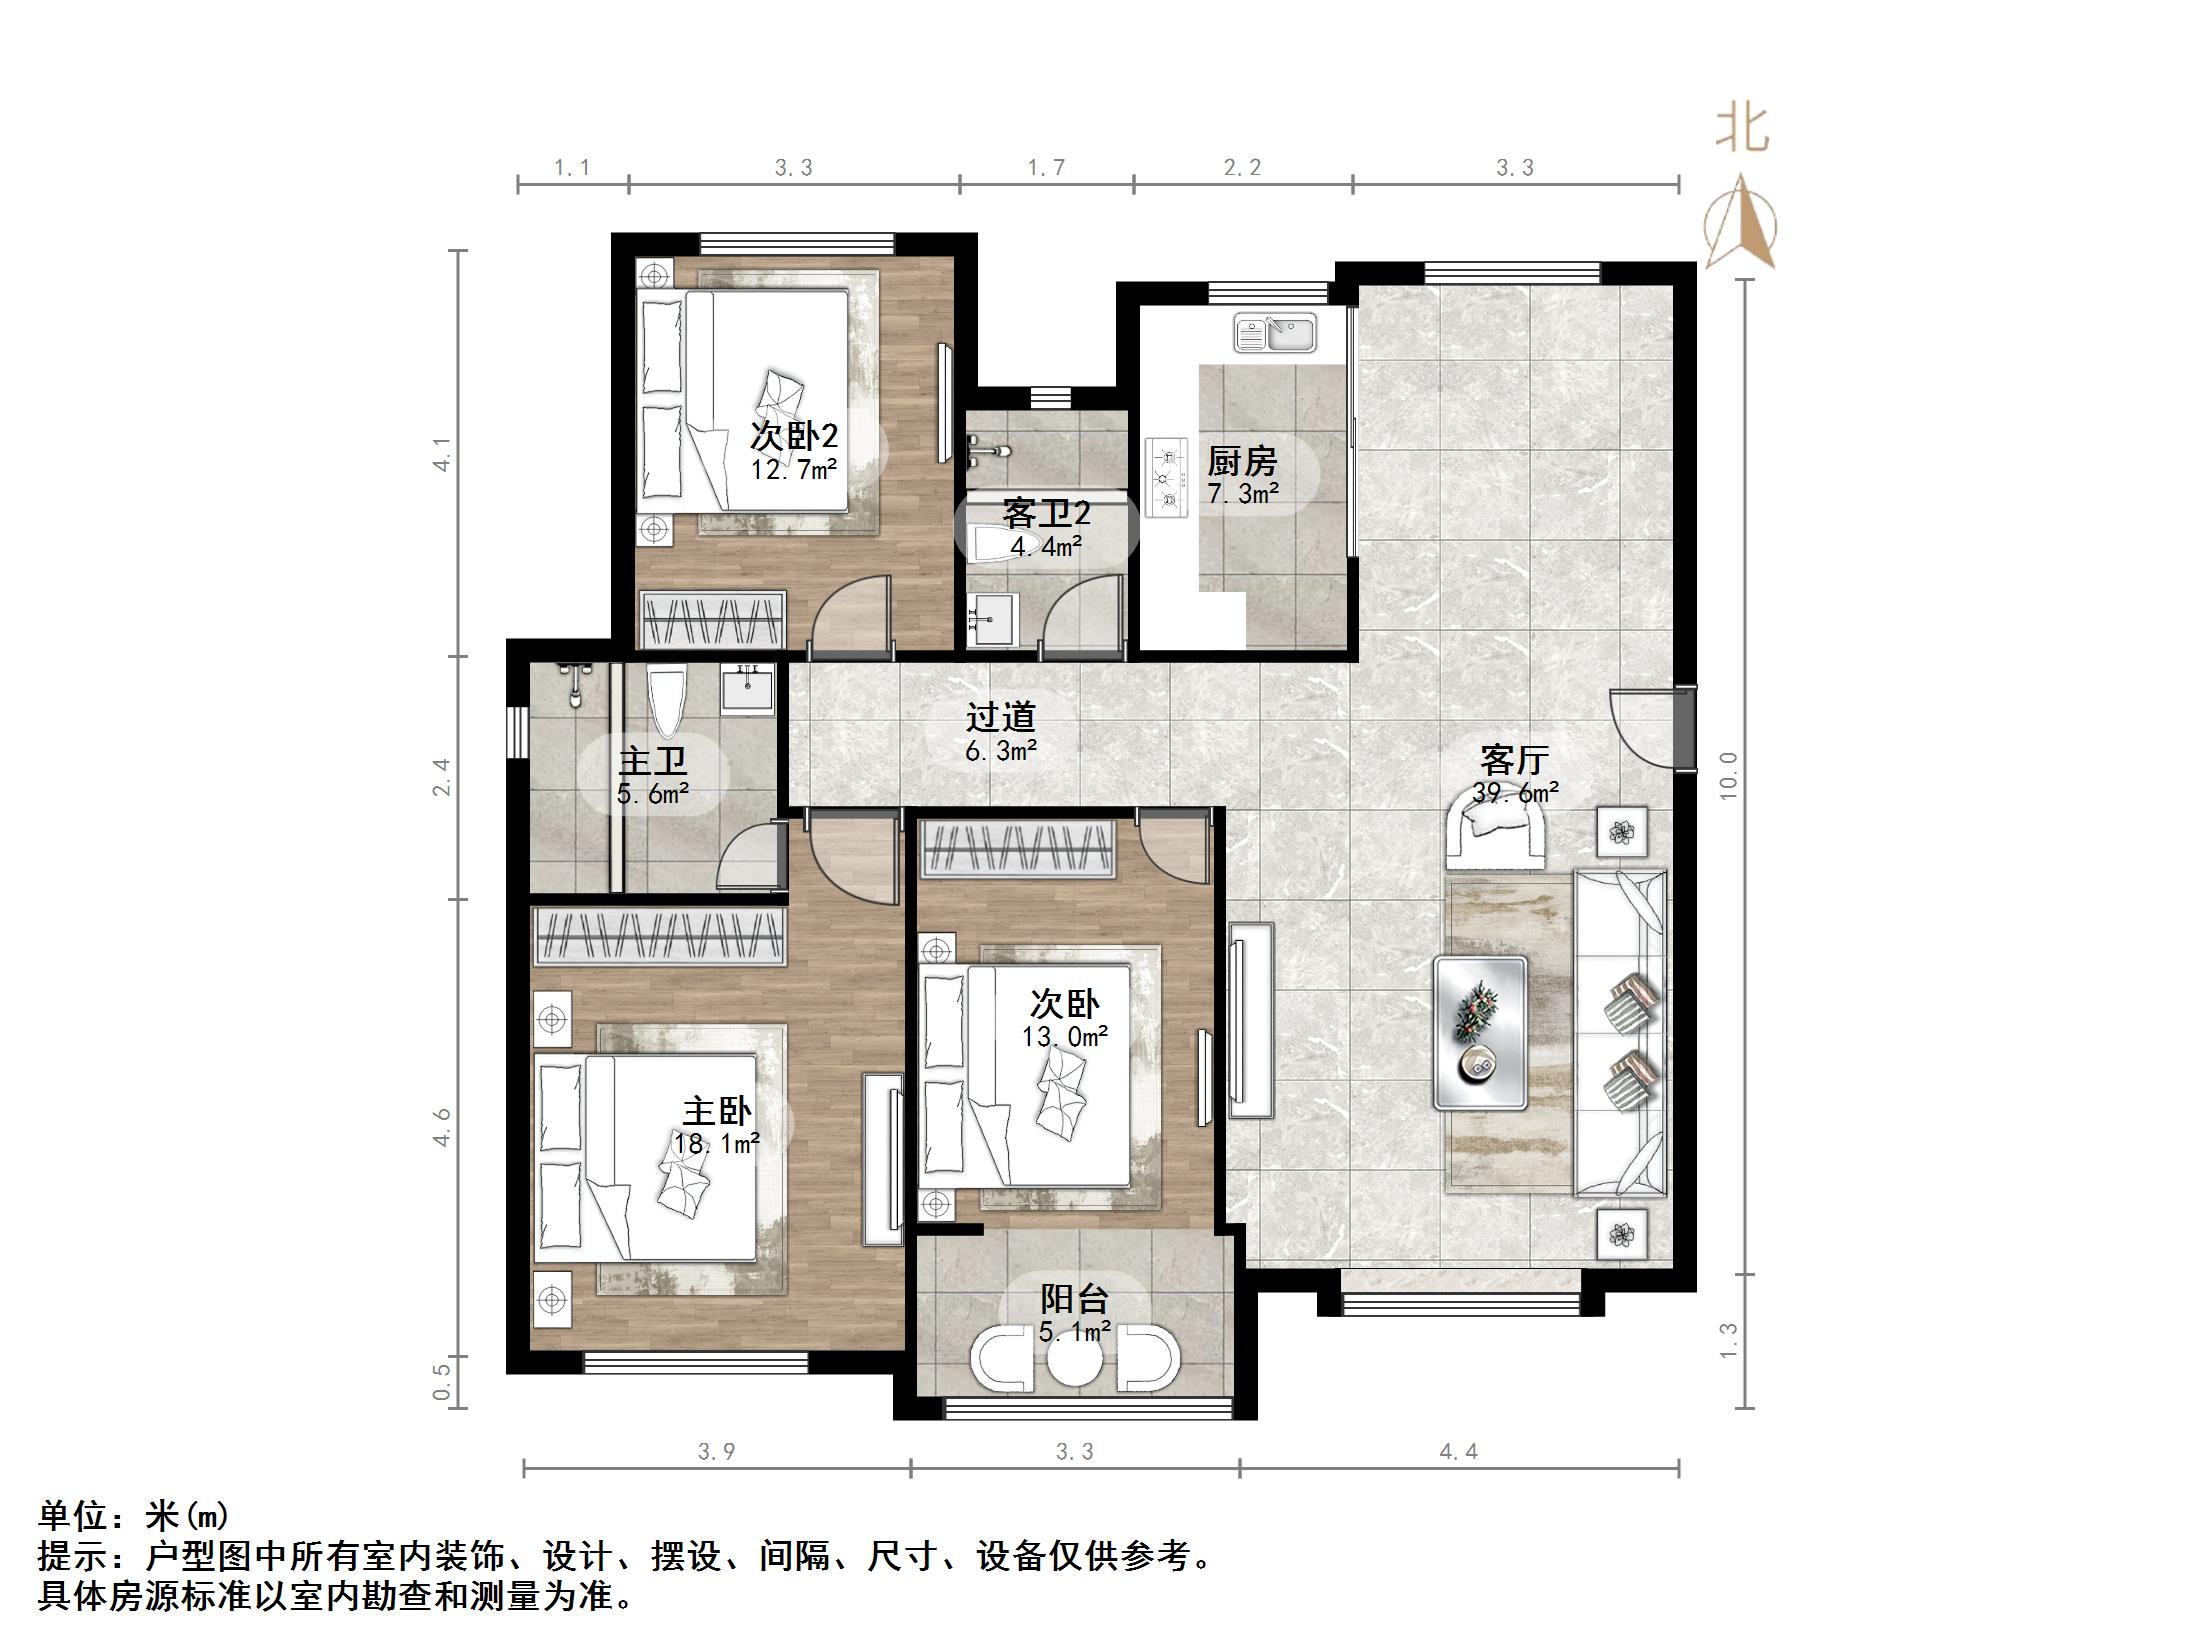 帝华鸿府东区,2,3室2厅,185万,不满两年,毛坯,有电梯